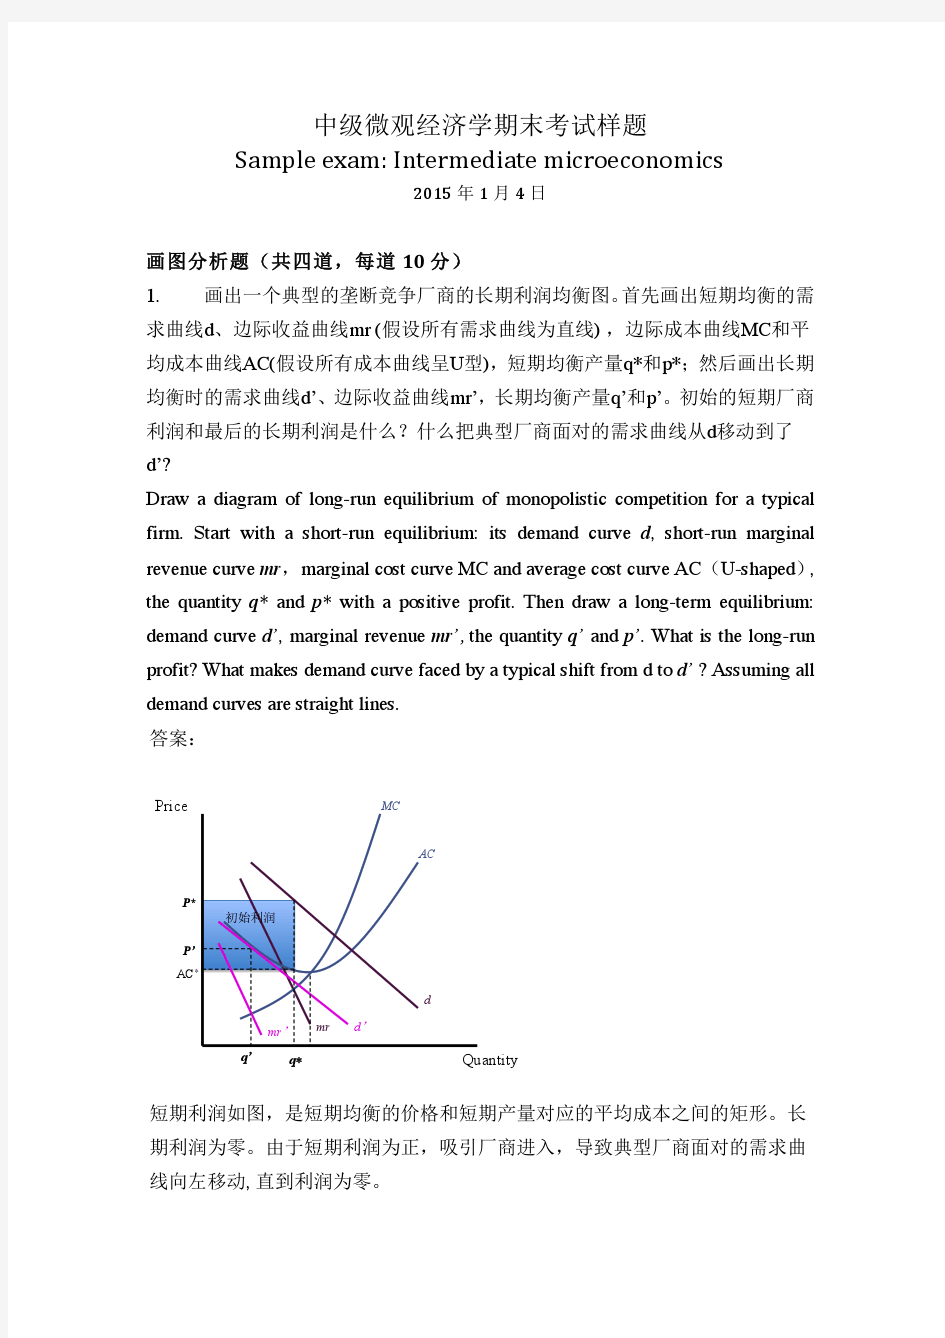 北京大学中级微观经济学期末考试样题